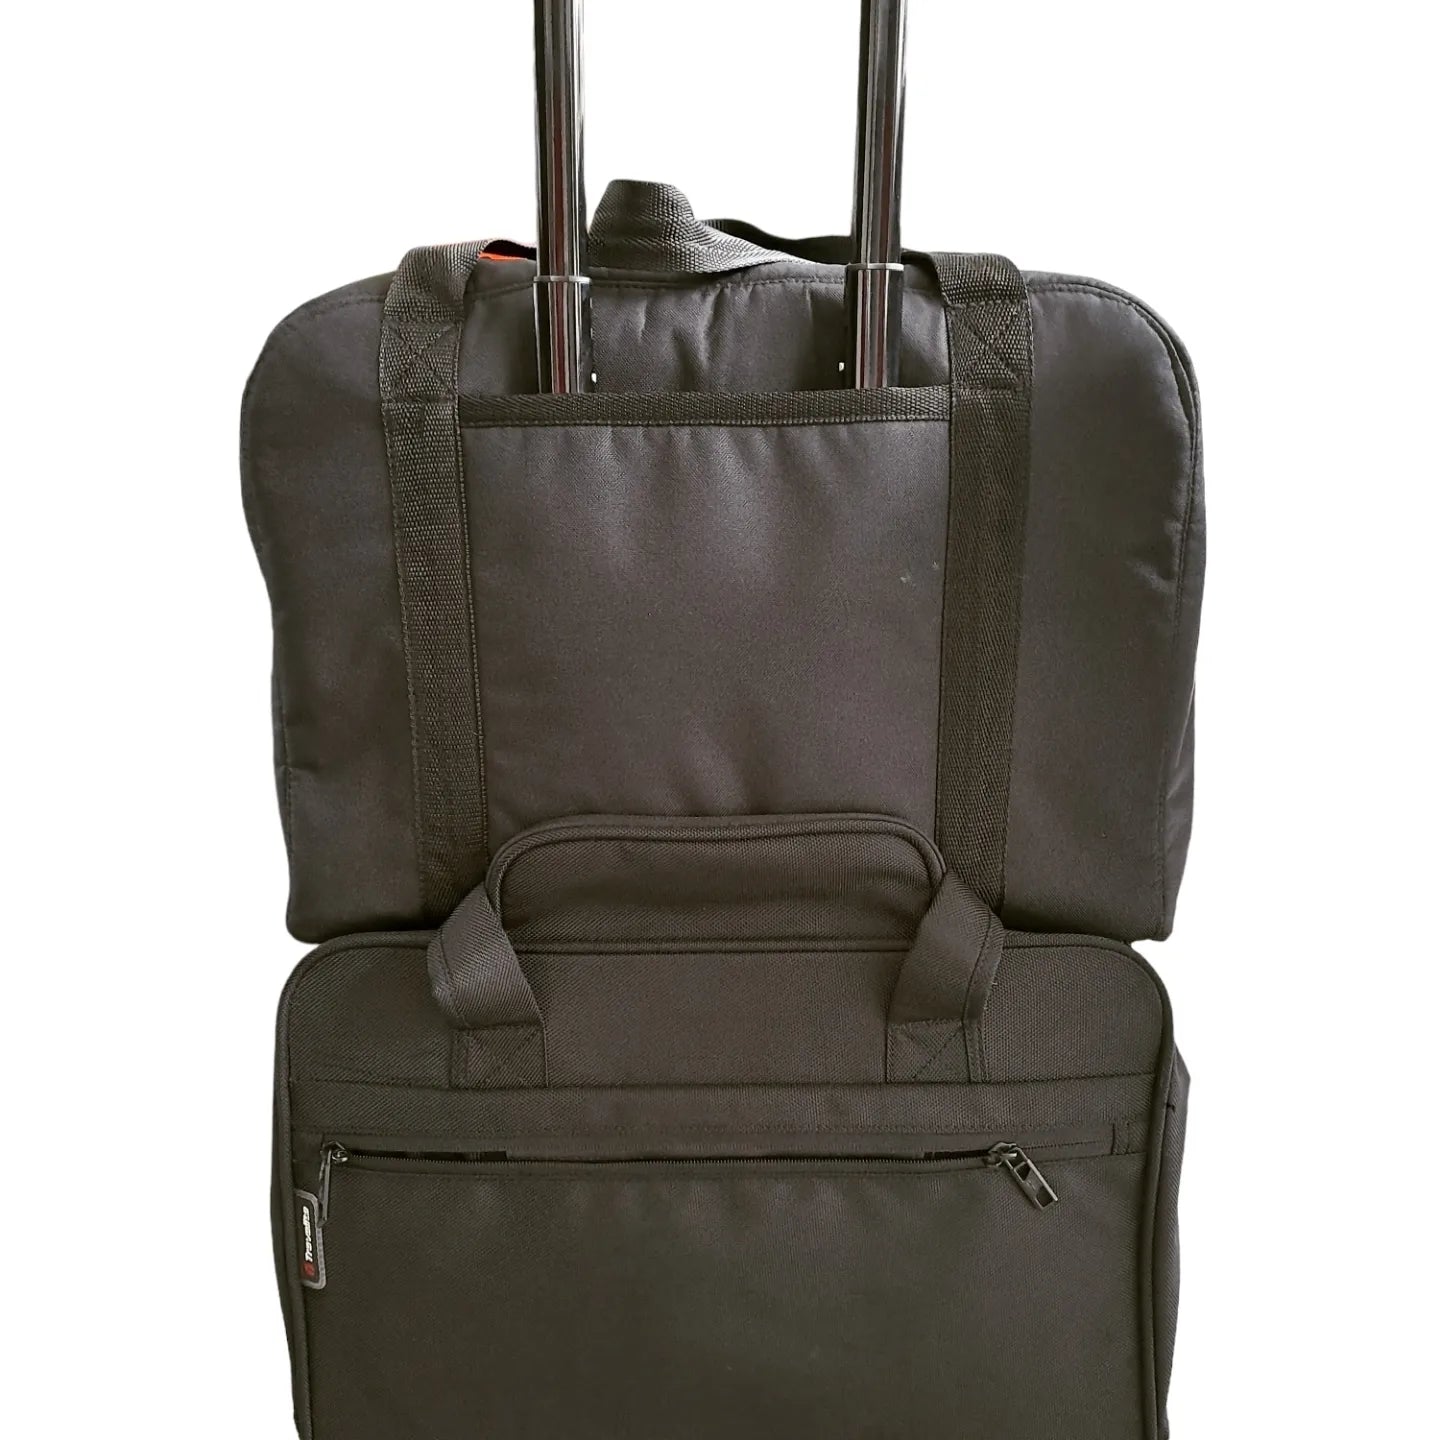 TraDishNal Overnight Travel Bag Bags & Handbags TraDishNal 